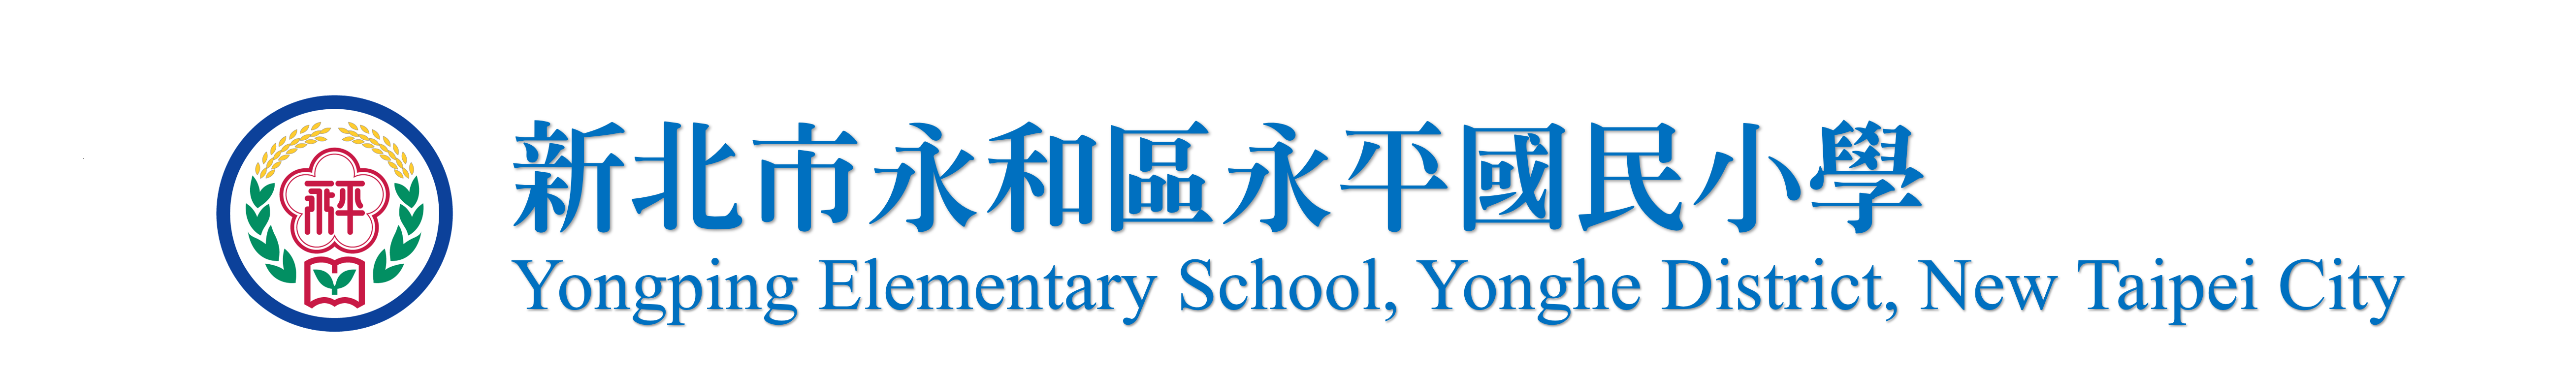 永平國小logo圖片(回首頁)